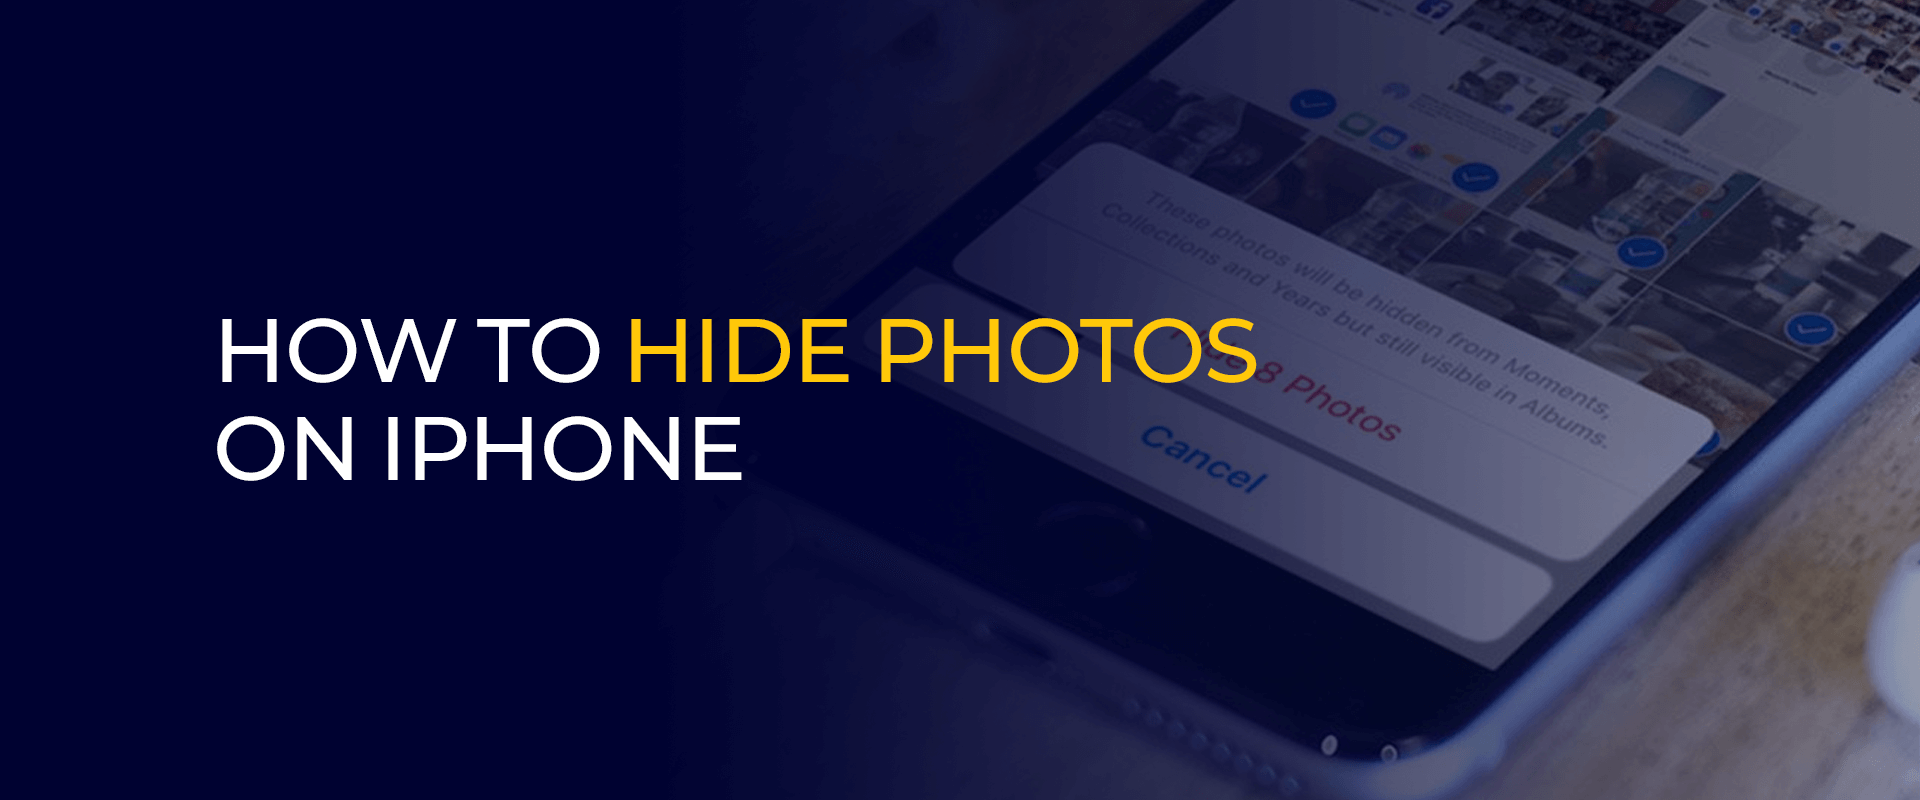 كيفية إخفاء الصور على iPhone